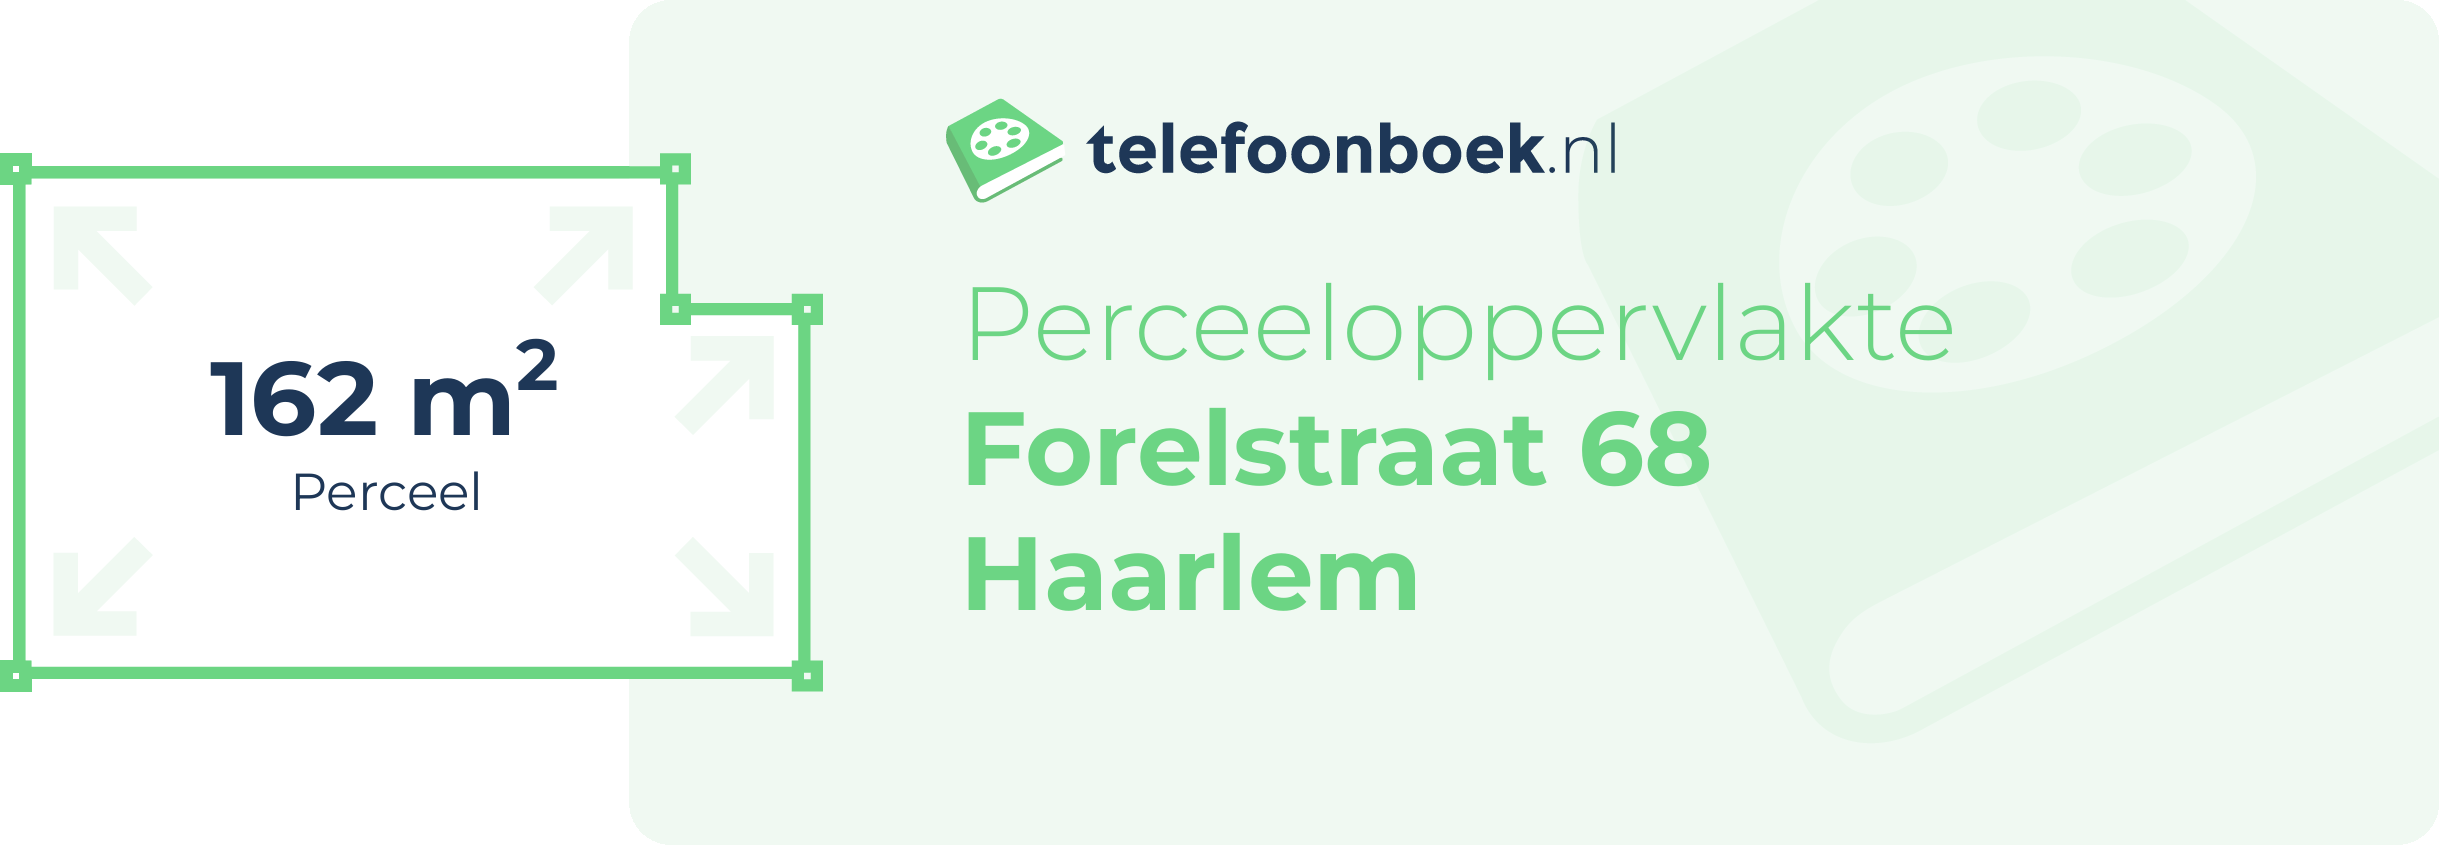 Perceeloppervlakte Forelstraat 68 Haarlem